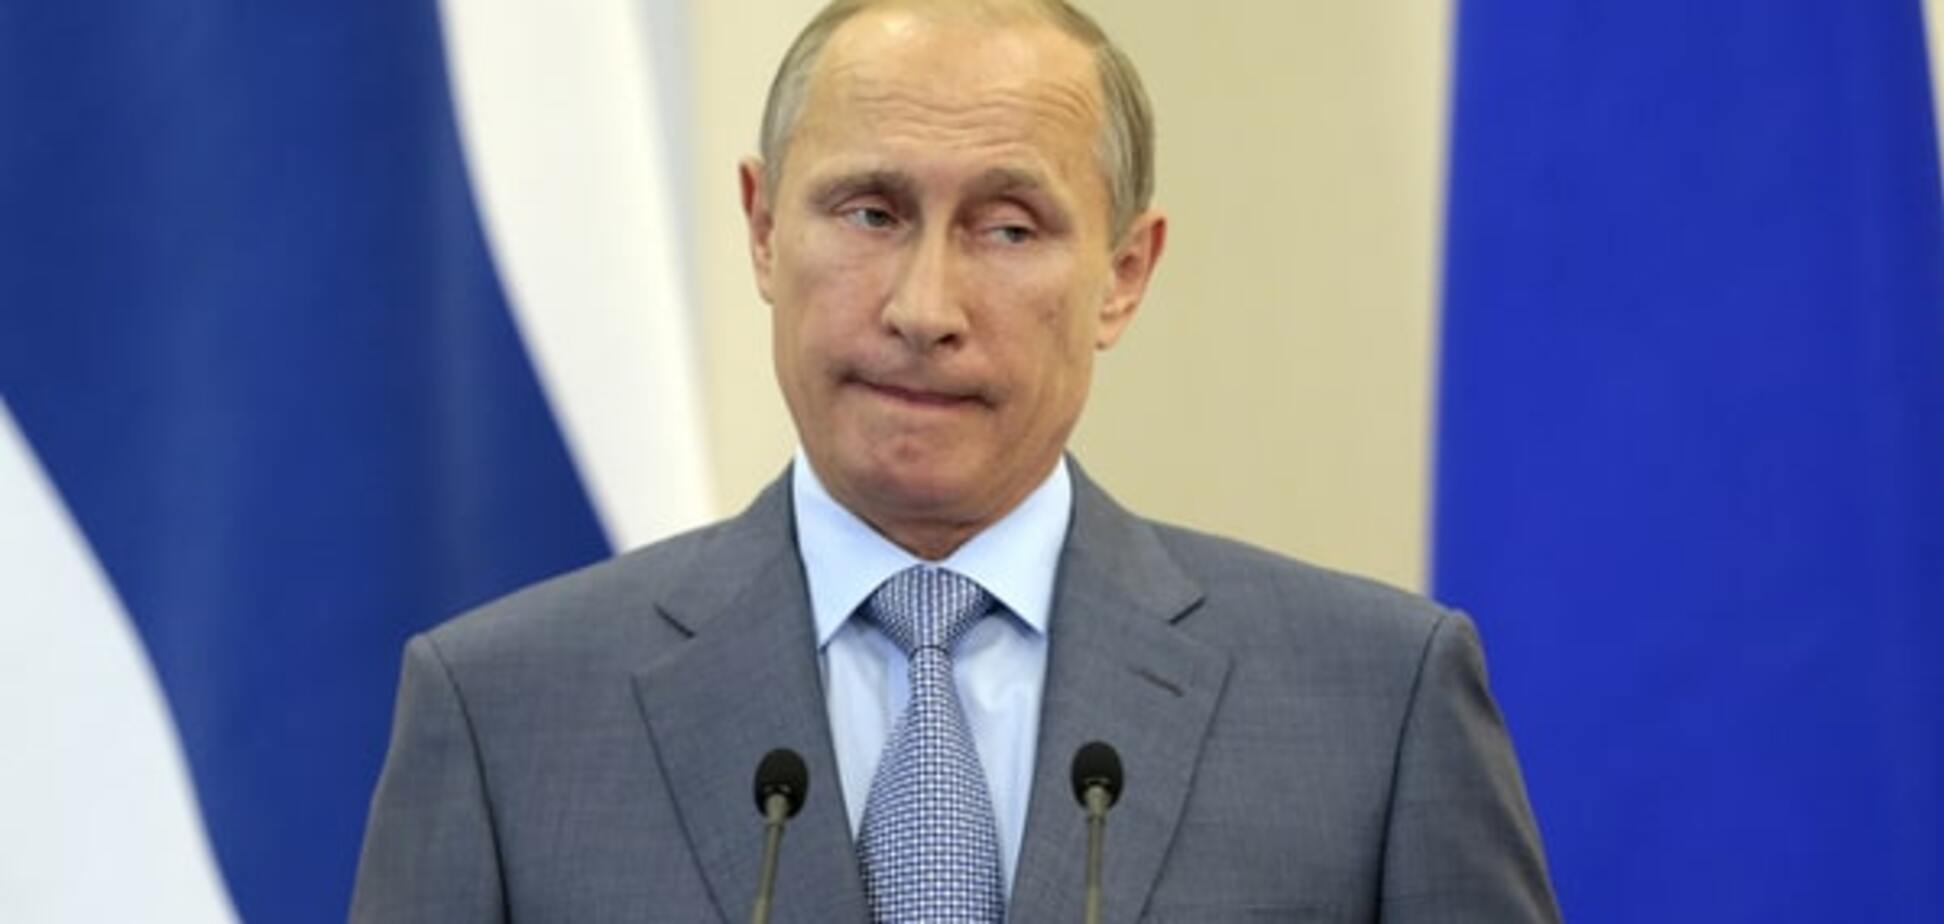 The Washington Post раскрыла планы Путина в Сирии: все более чем очевидно